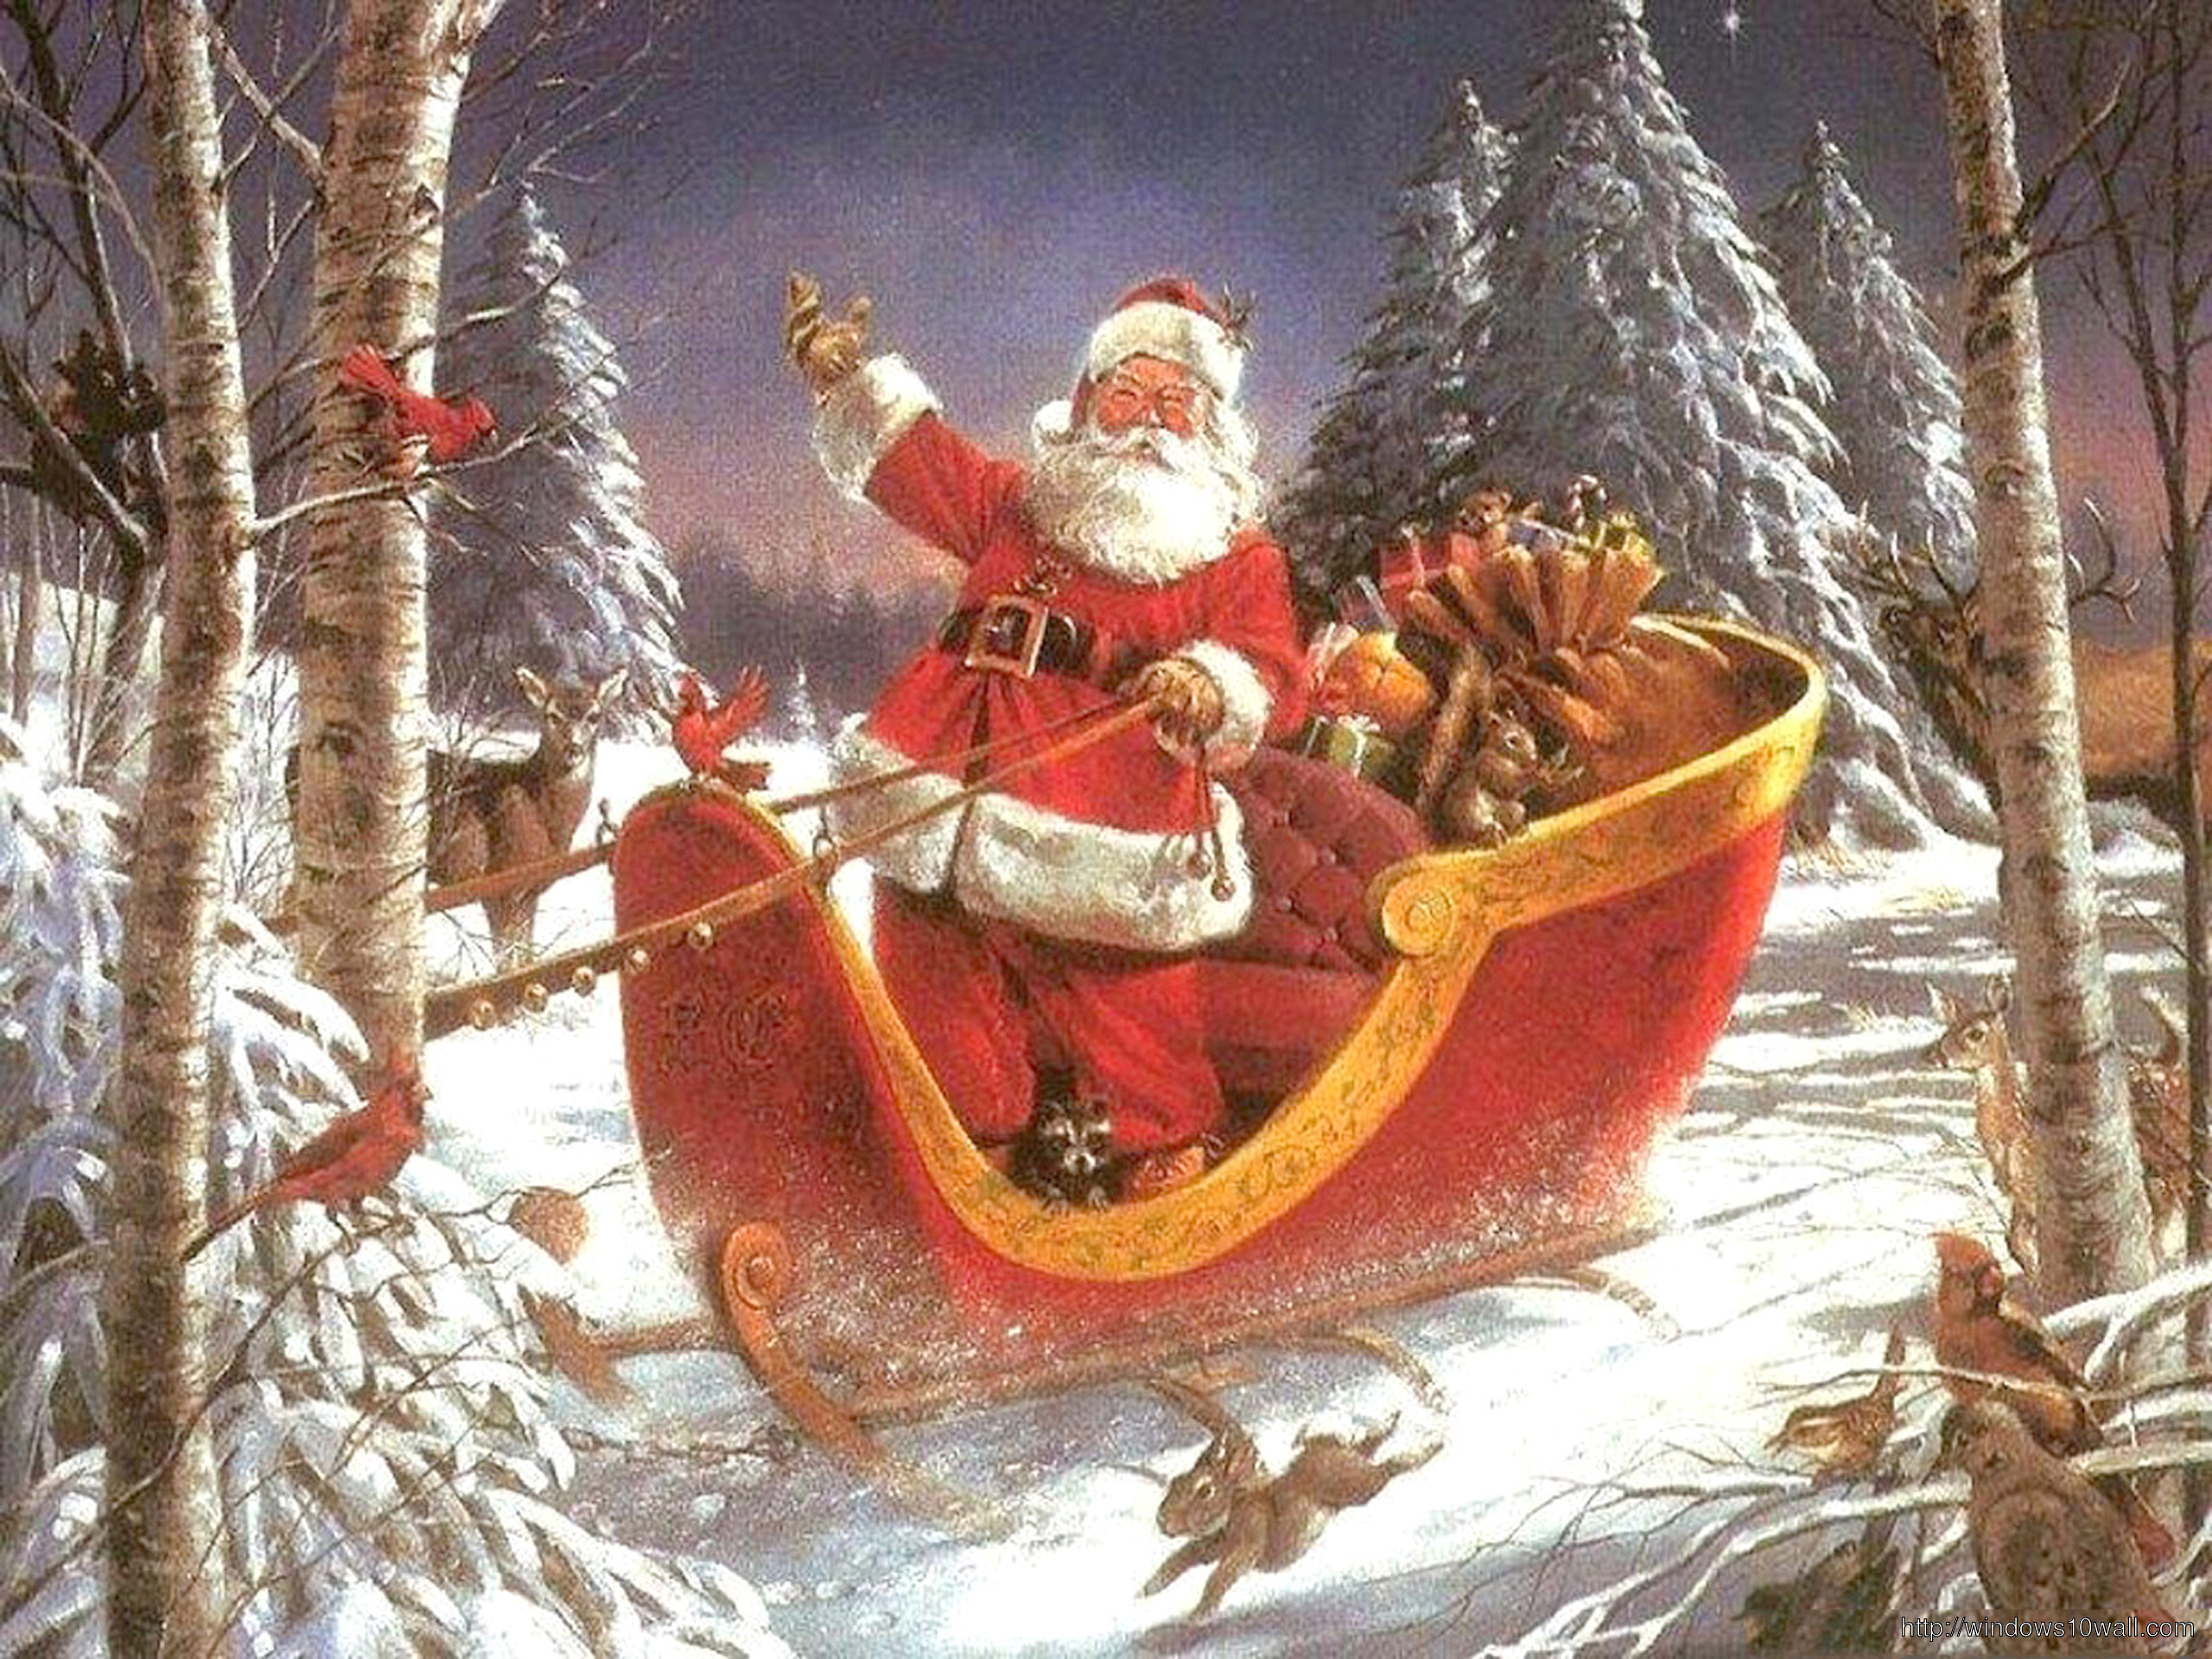 Crazy Christmas - Weihnachten Bei Santa Claus [2001 TV Movie]